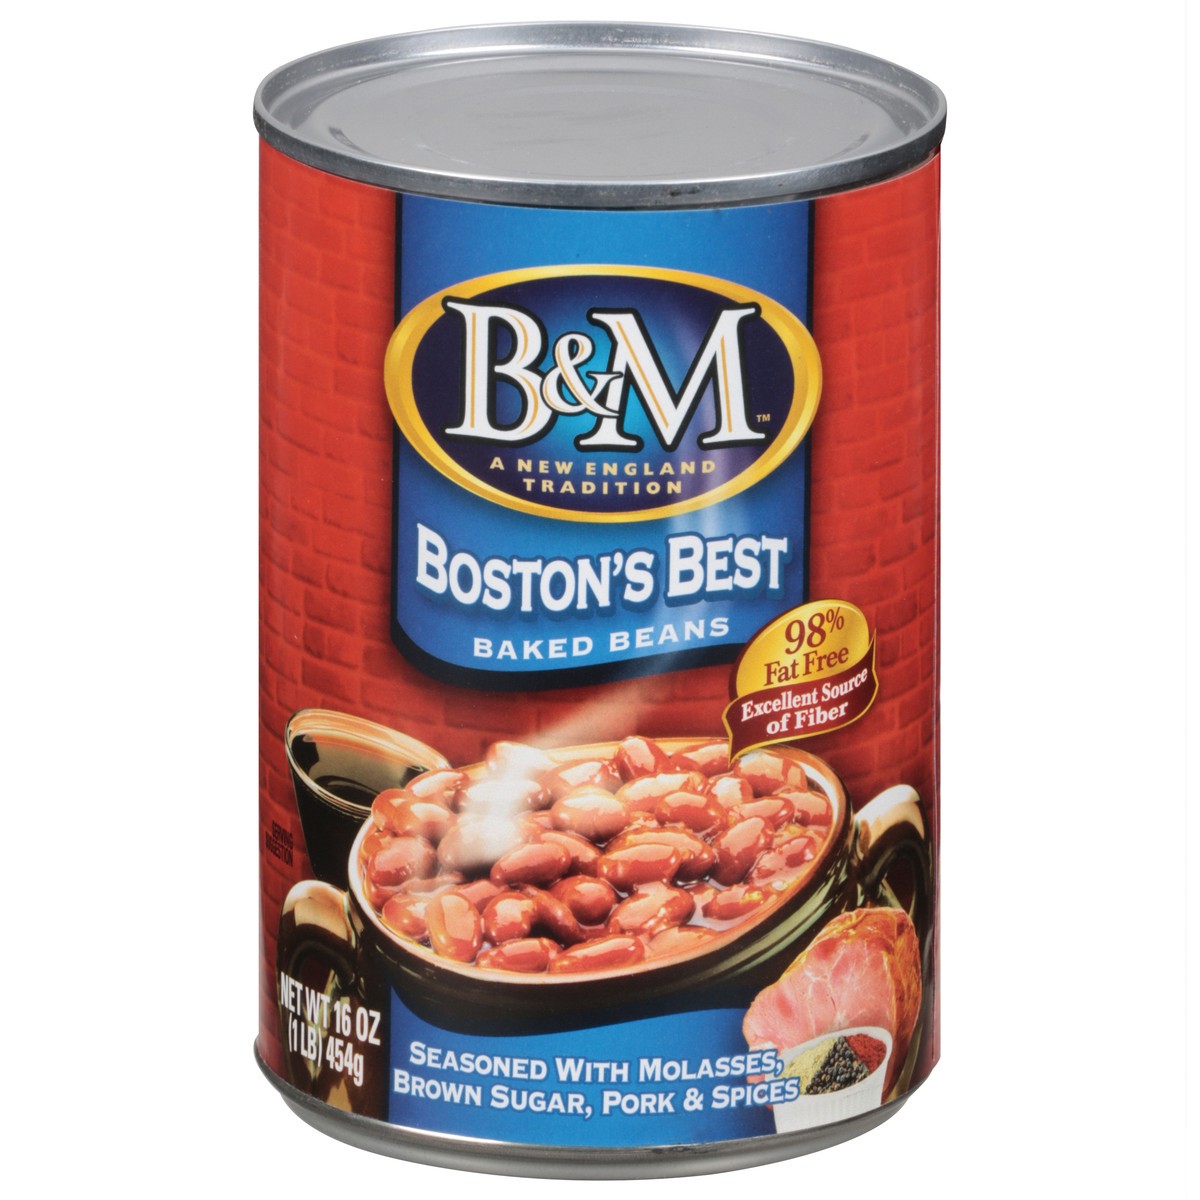 slide 1 of 7, B&M Boston's Best Baked Beans 16 oz, 16 oz